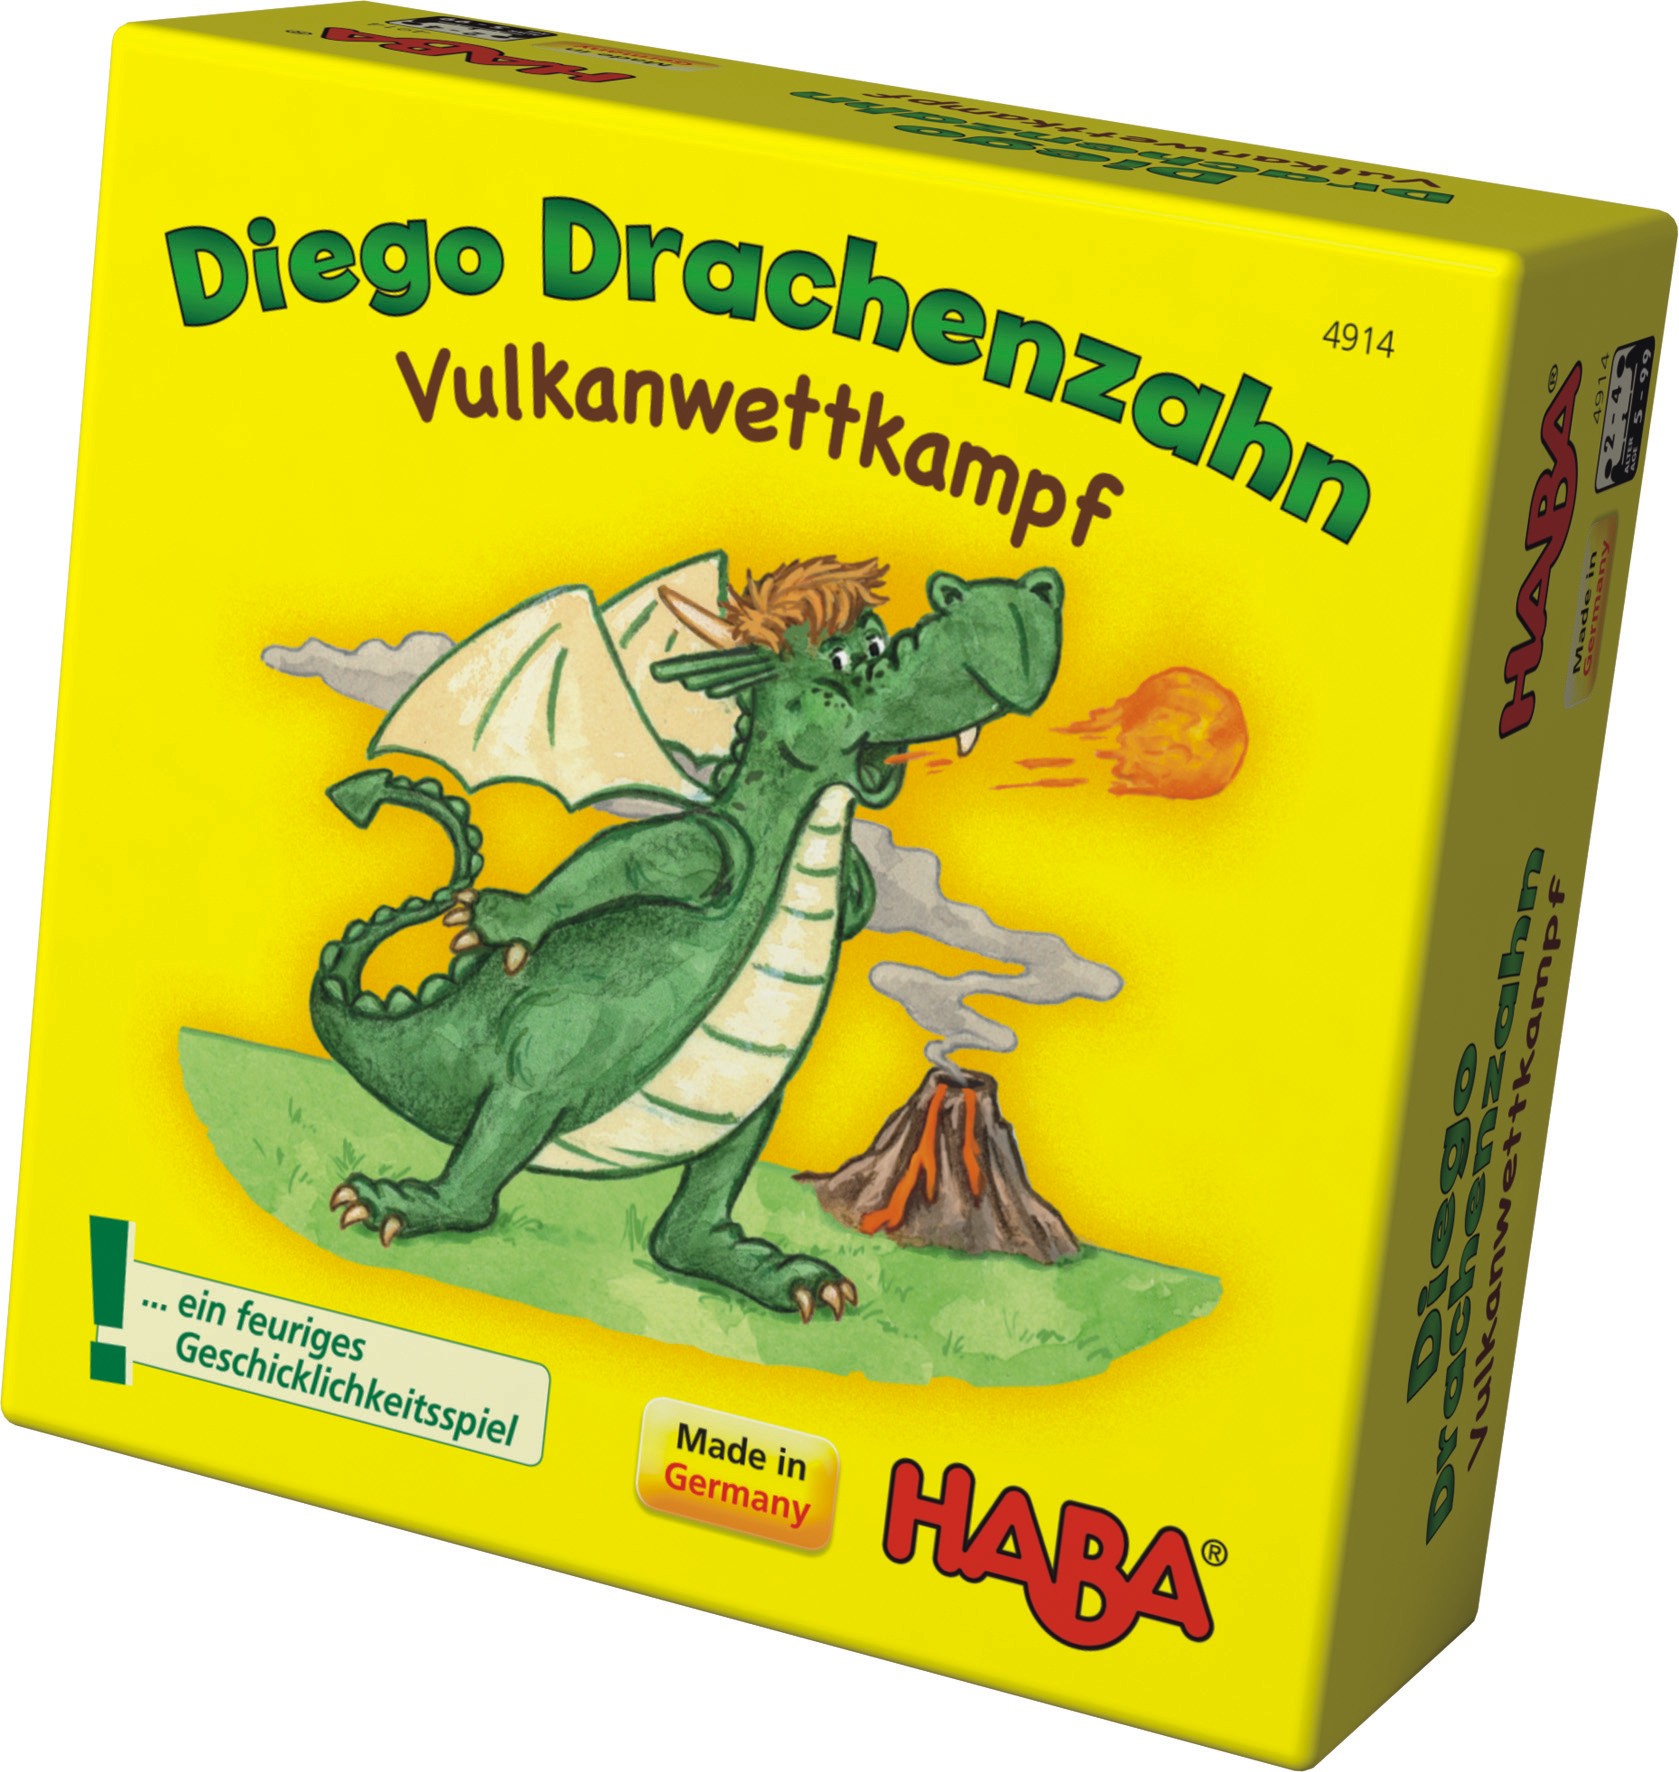 Diego Drachenzahn - Vulkanwettkampf von Haba